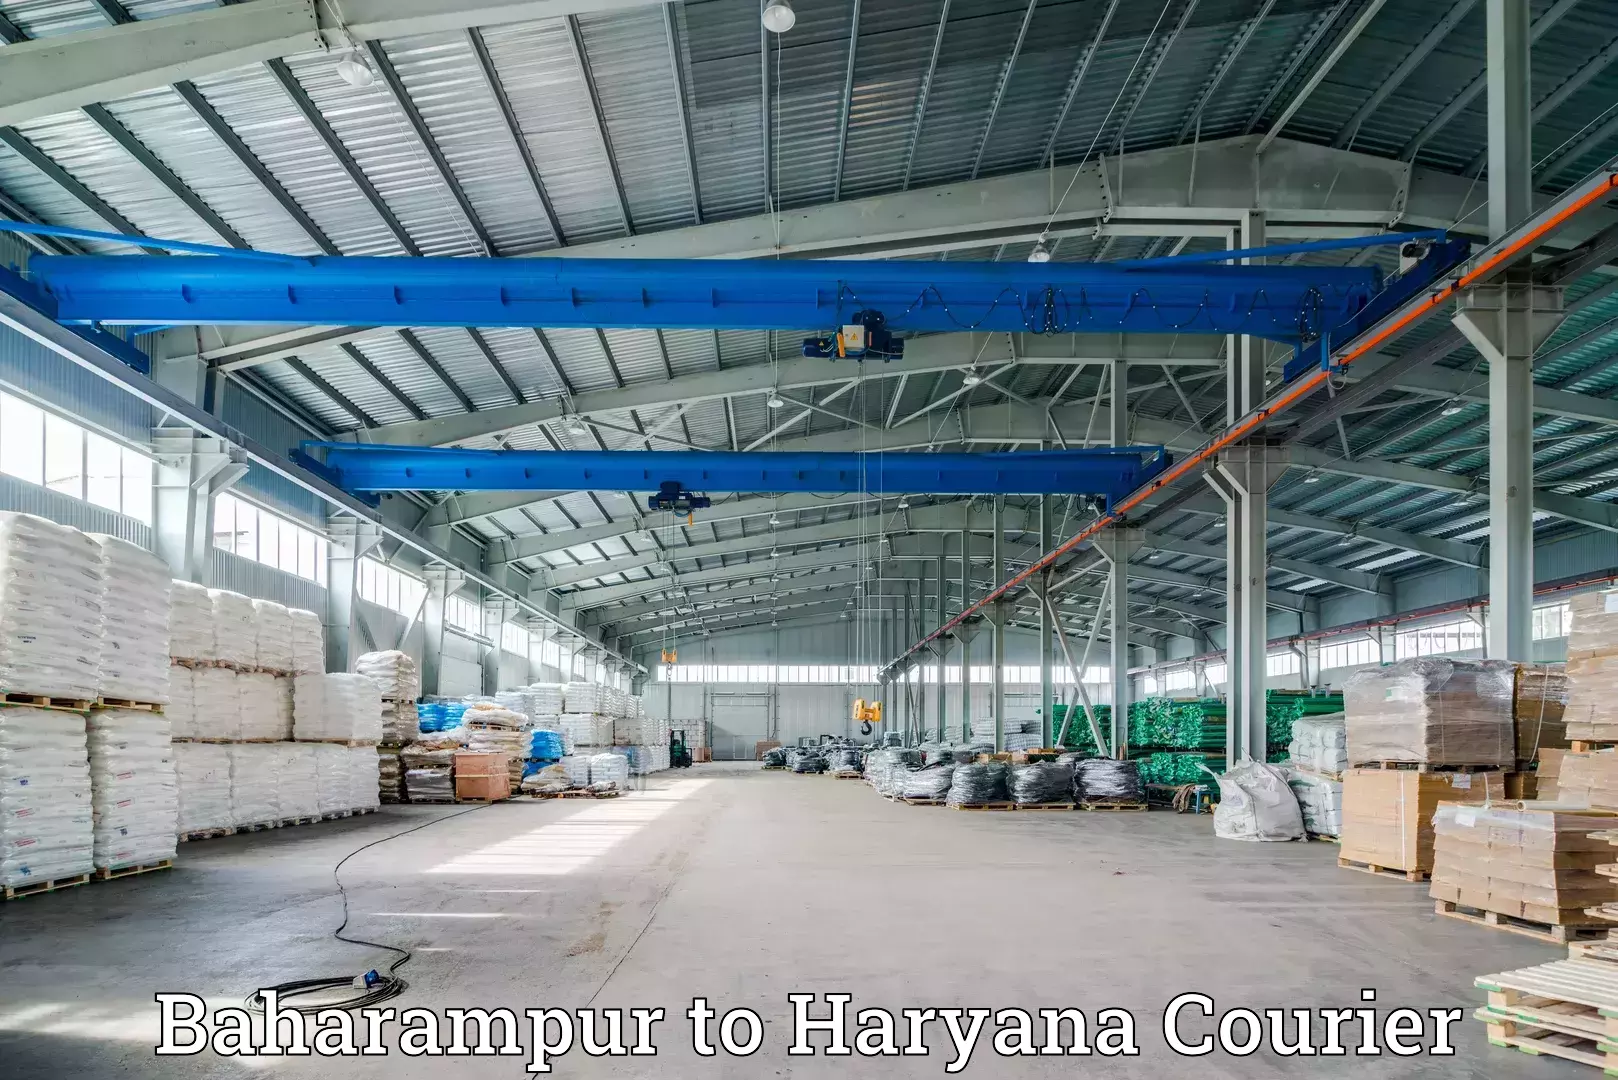 Affordable shipping solutions Baharampur to Chaudhary Charan Singh Haryana Agricultural University Hisar